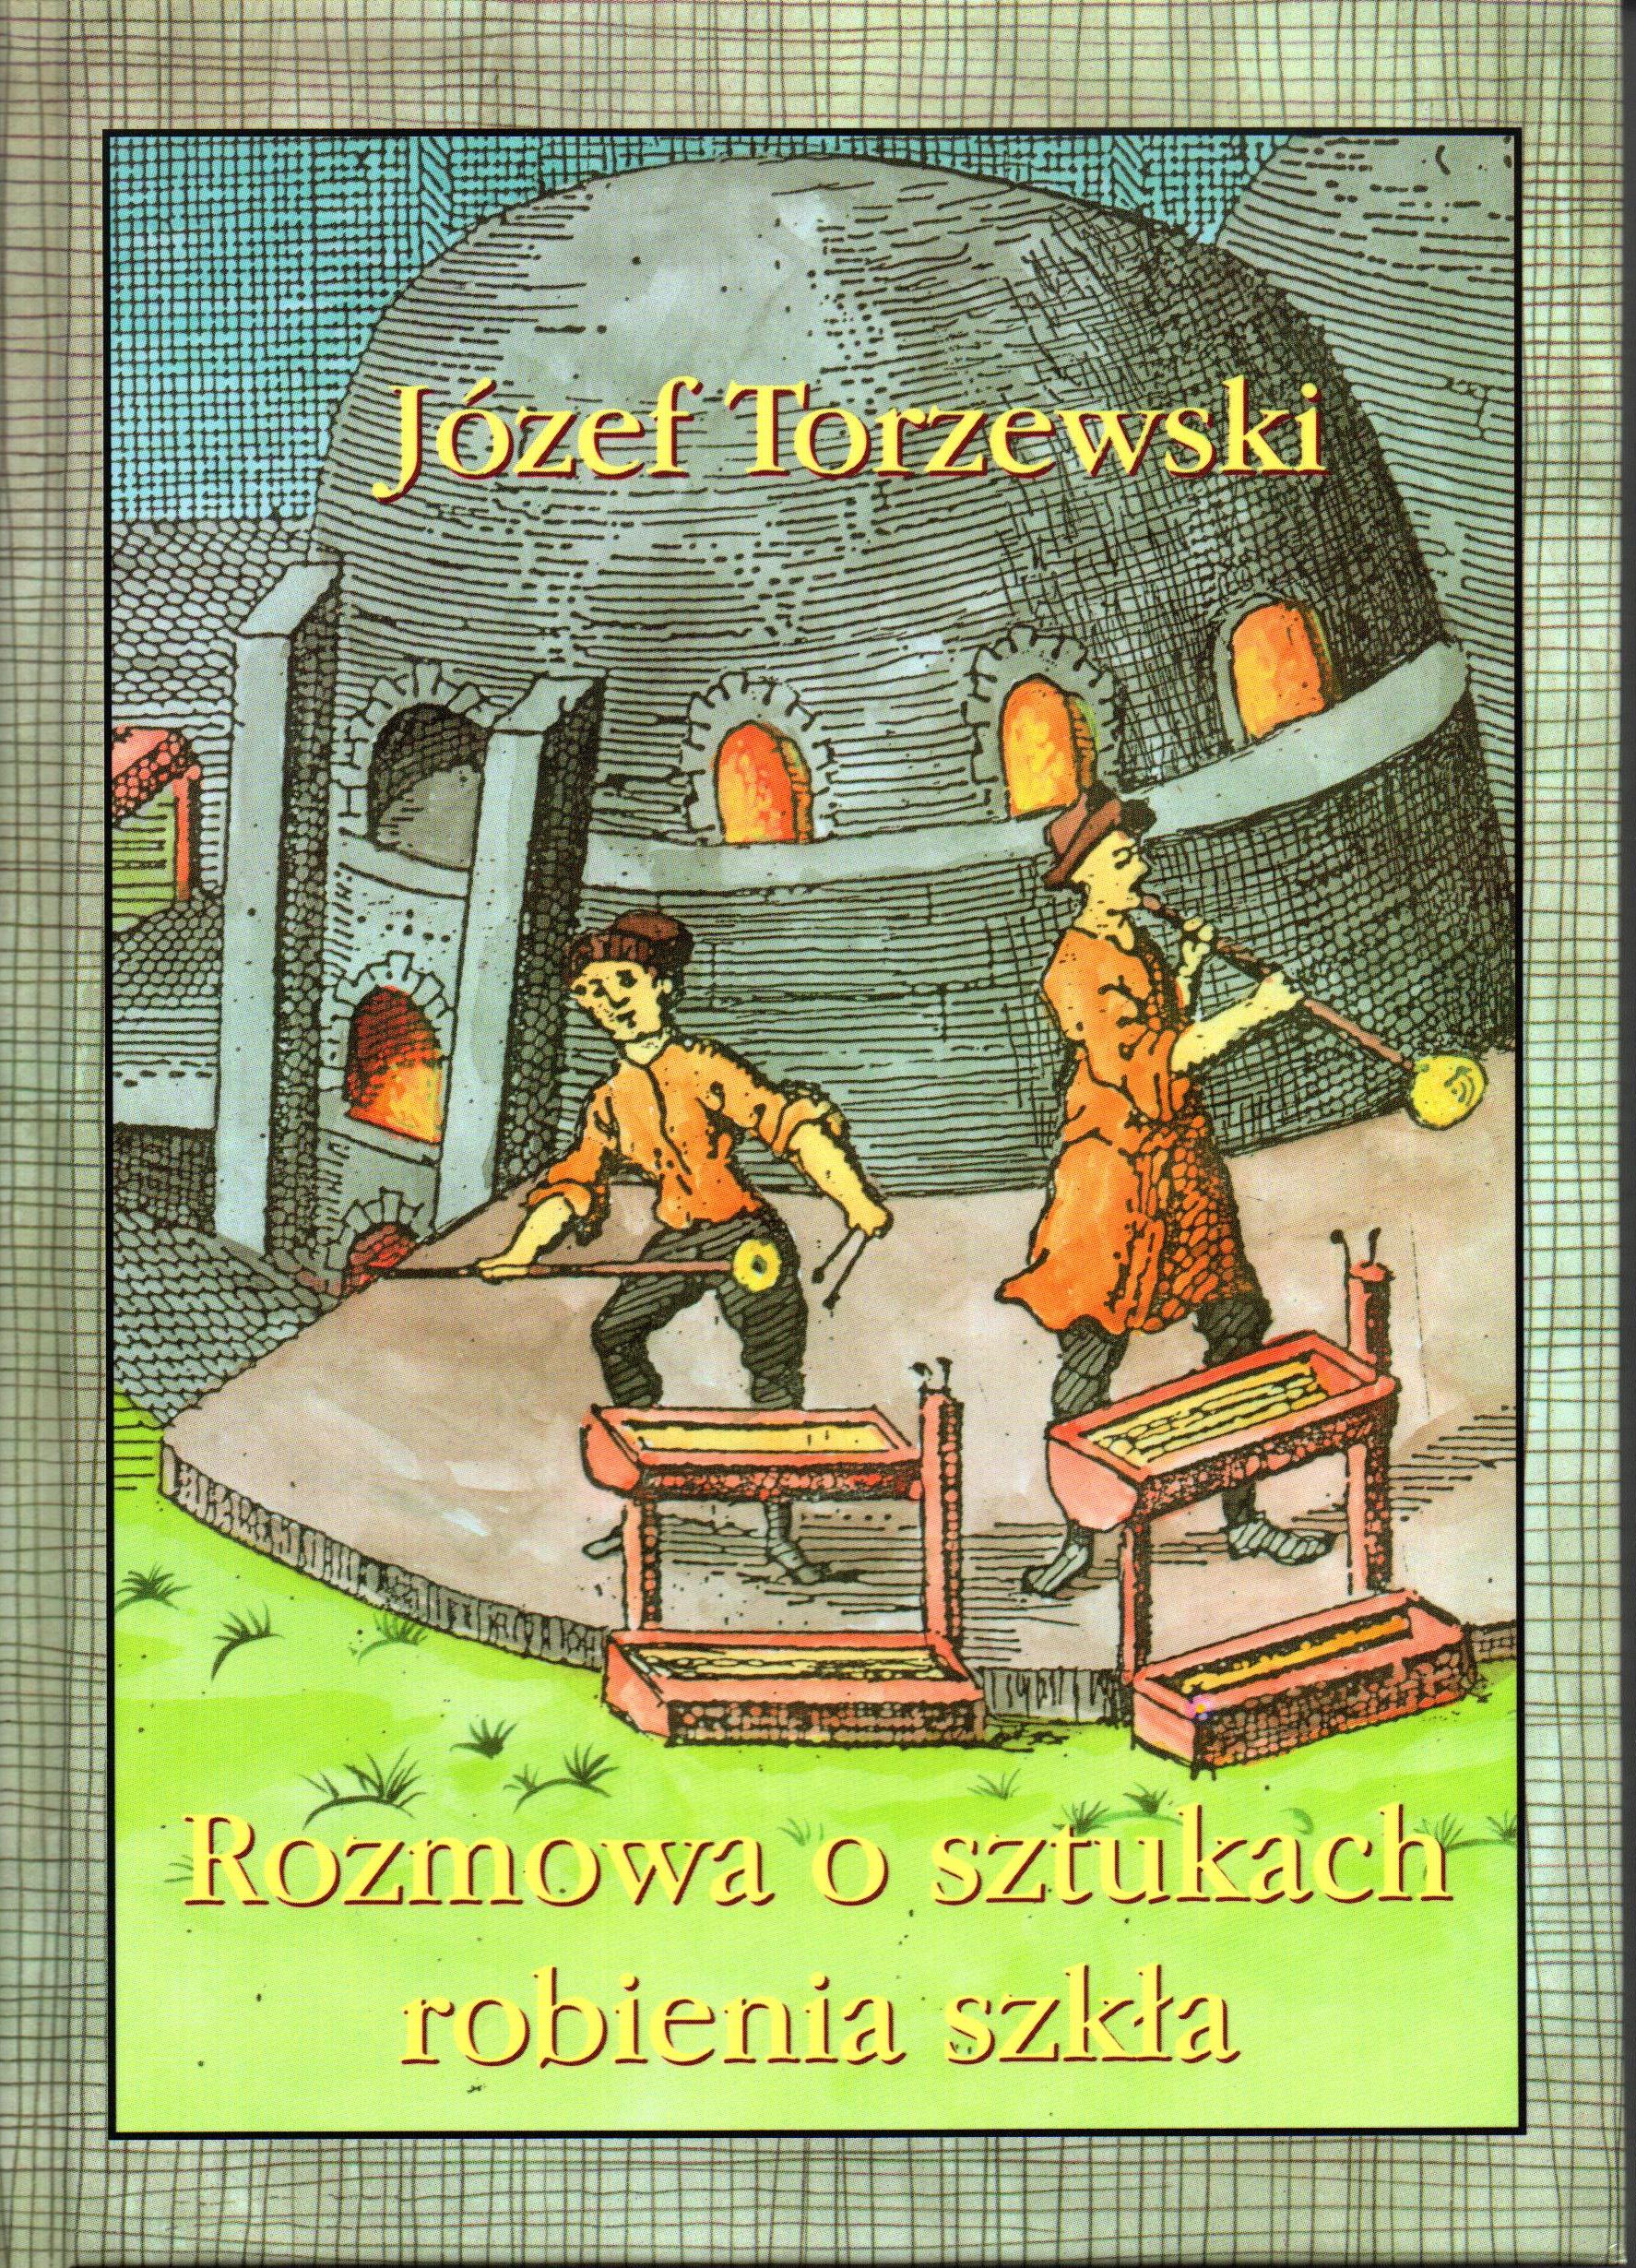 Na grafice przedstawiono rysunkowy obraz dwóch hutników podczas pracy i tytuł książki wraz z autorem